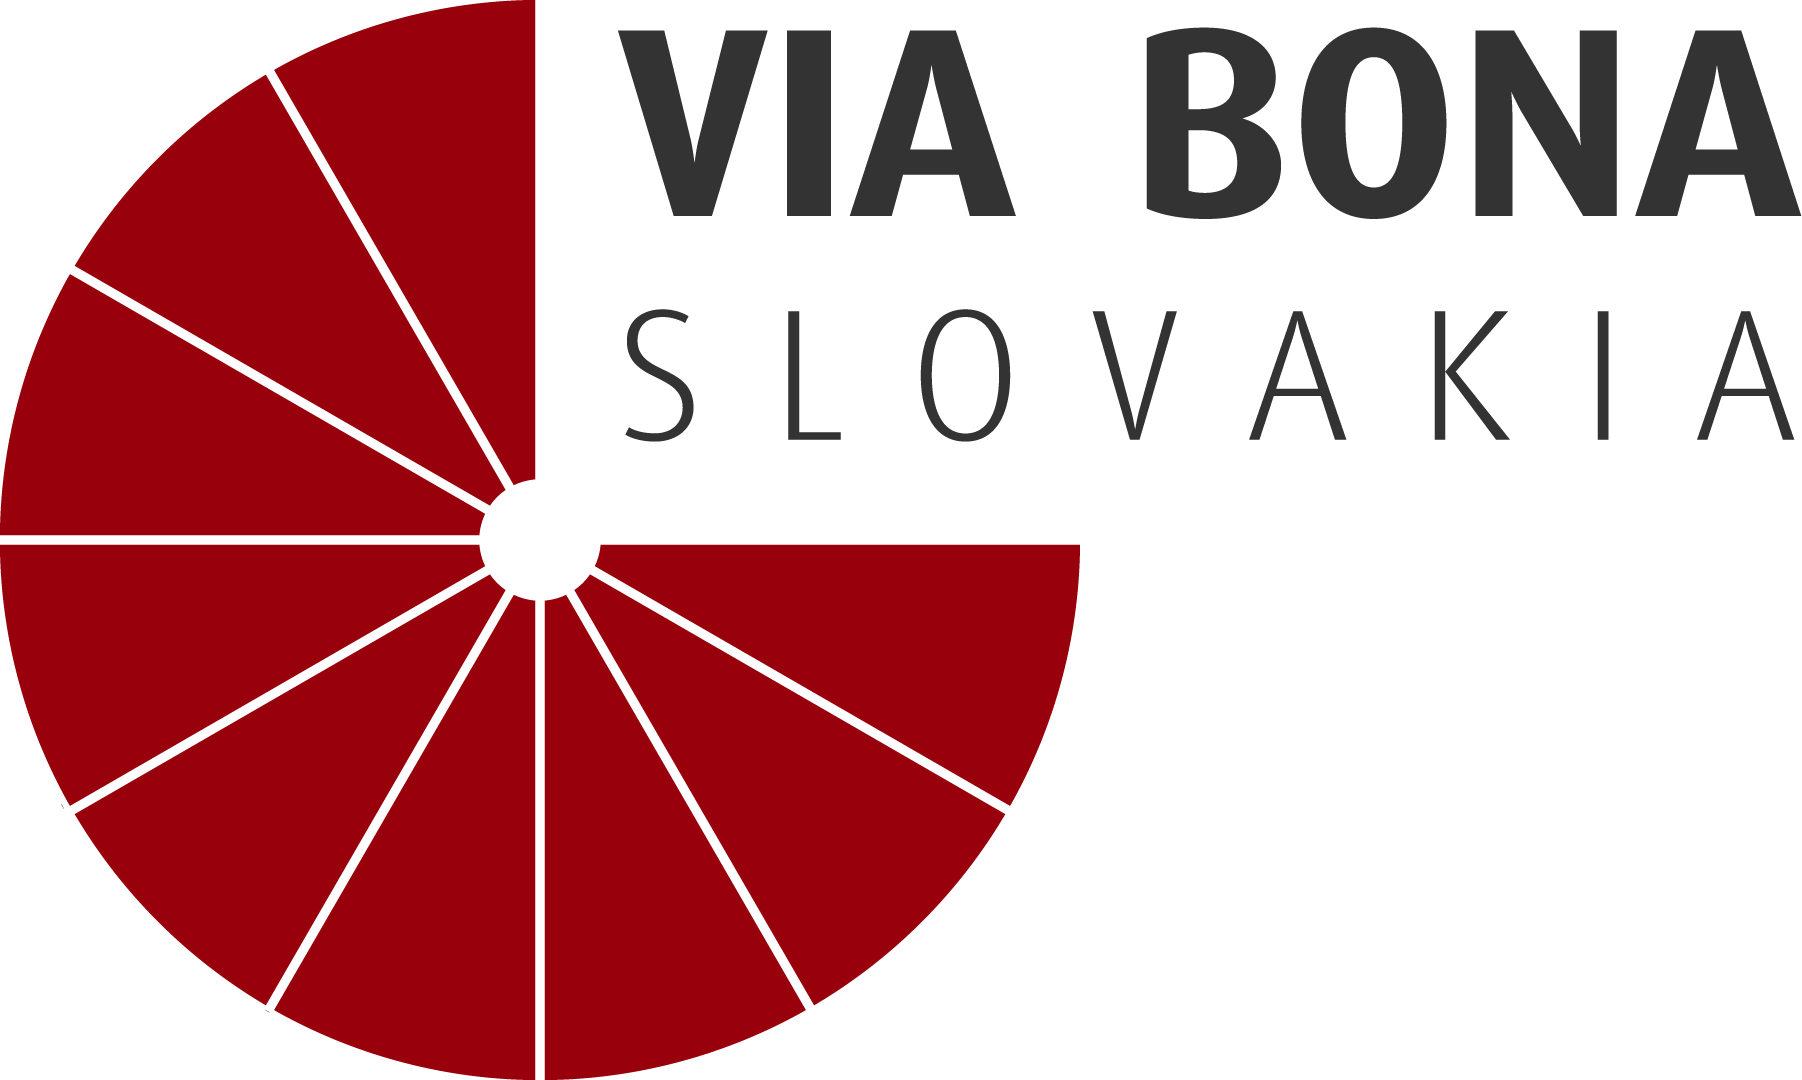 Férový hráč na trhu – Via Bona Slovakia logo